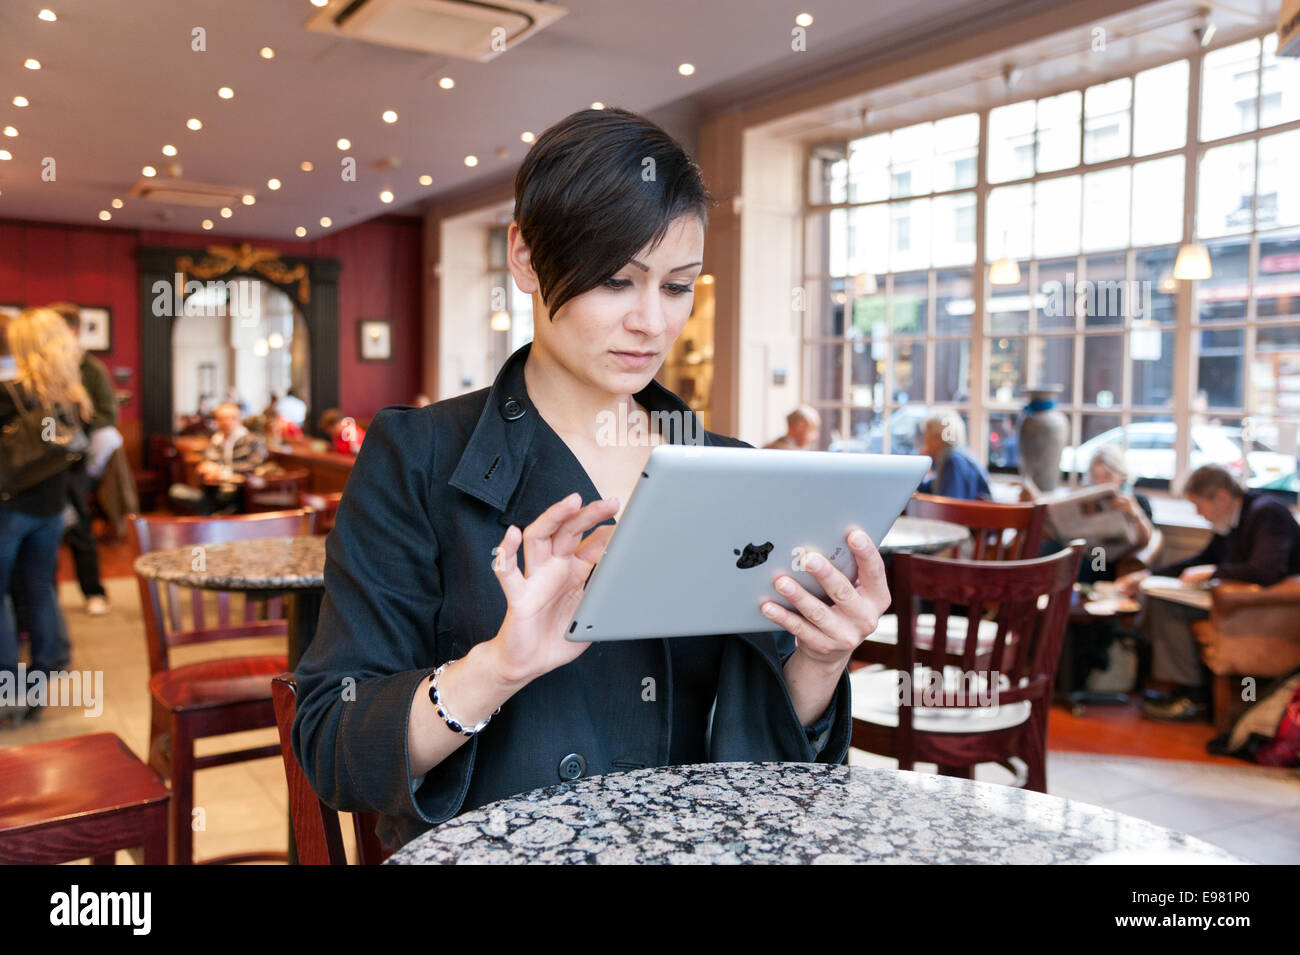 Junge Frau, die das Surfen im Internet auf ein Apple iPad Tablet-Computer mit gratis Kaffee Shop wi Fi, London, England, UK Stockfoto